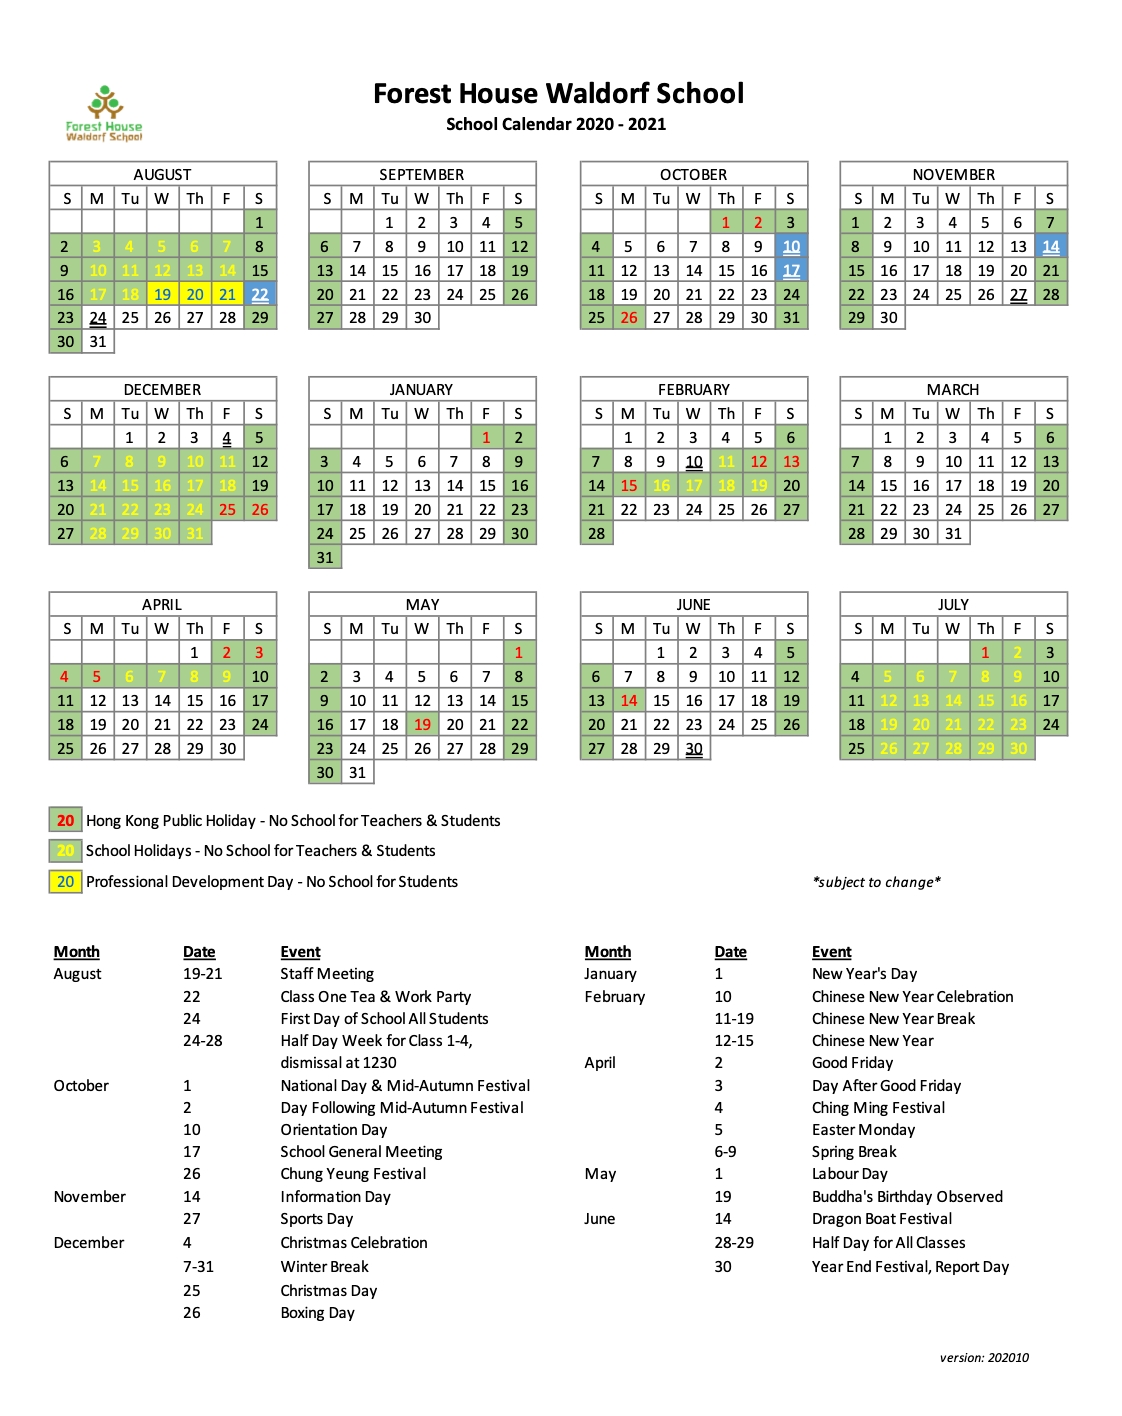 School Calendar - Forest House Waldorf School 2021 Calendar Hong Kong